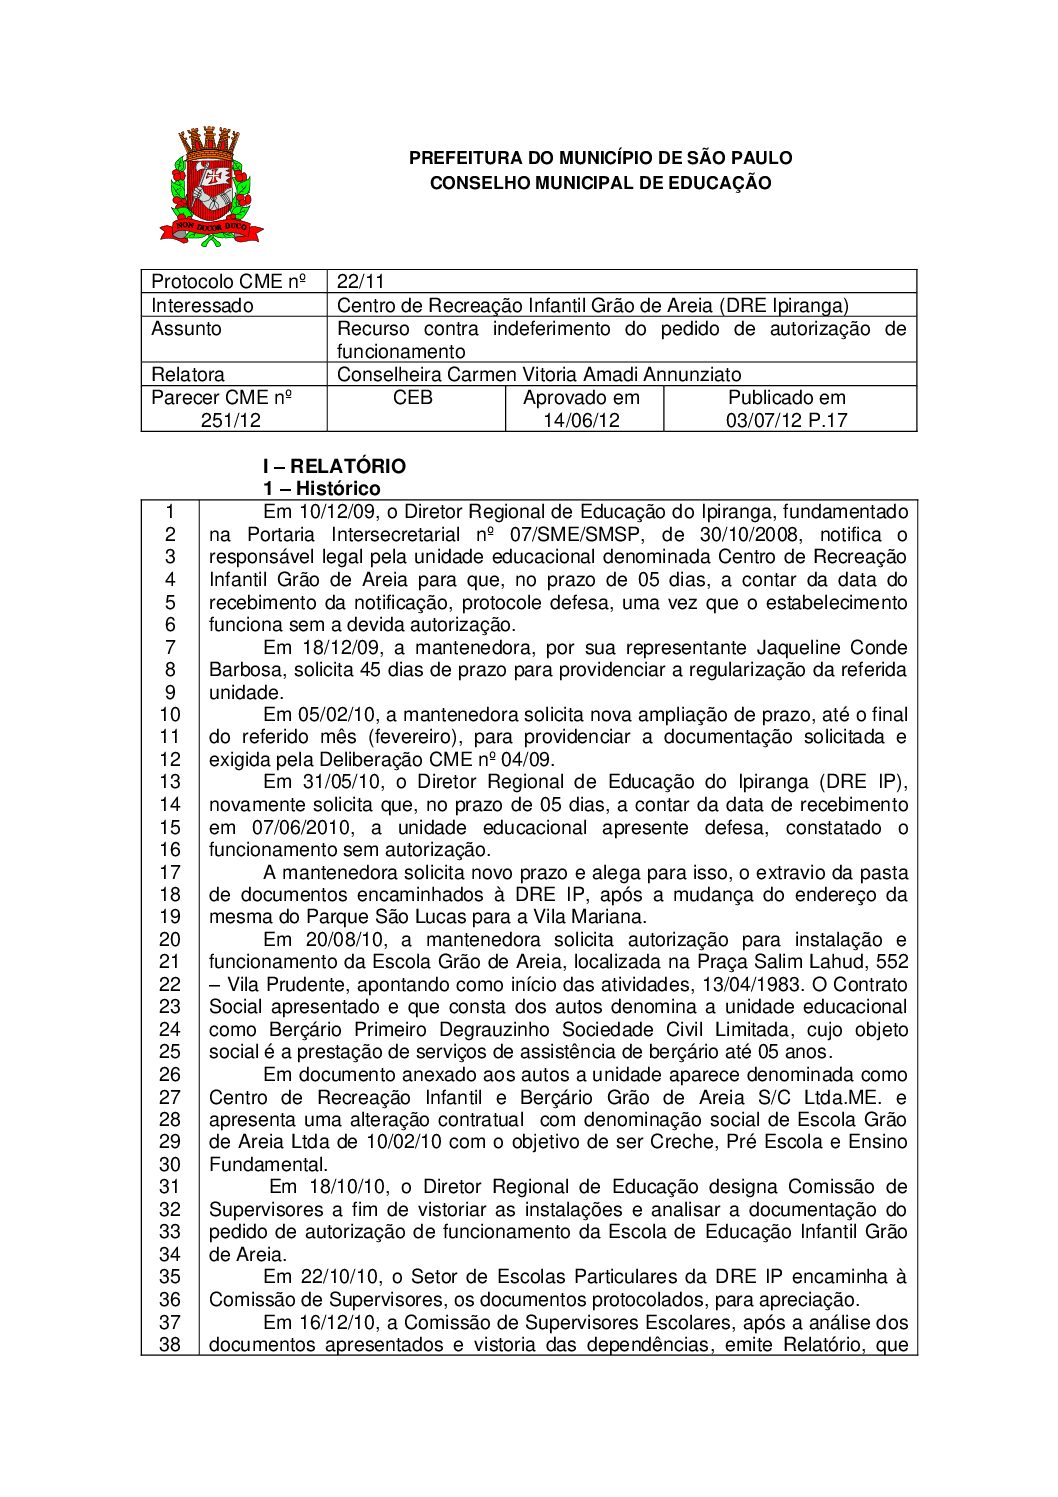 Parecer CME nº 251/2012 - Centro de Recreação Infantil Grão de Areia (DRE Ipiranga) - Recurso contra indeferimento do pedido de autorização de funcionamento 